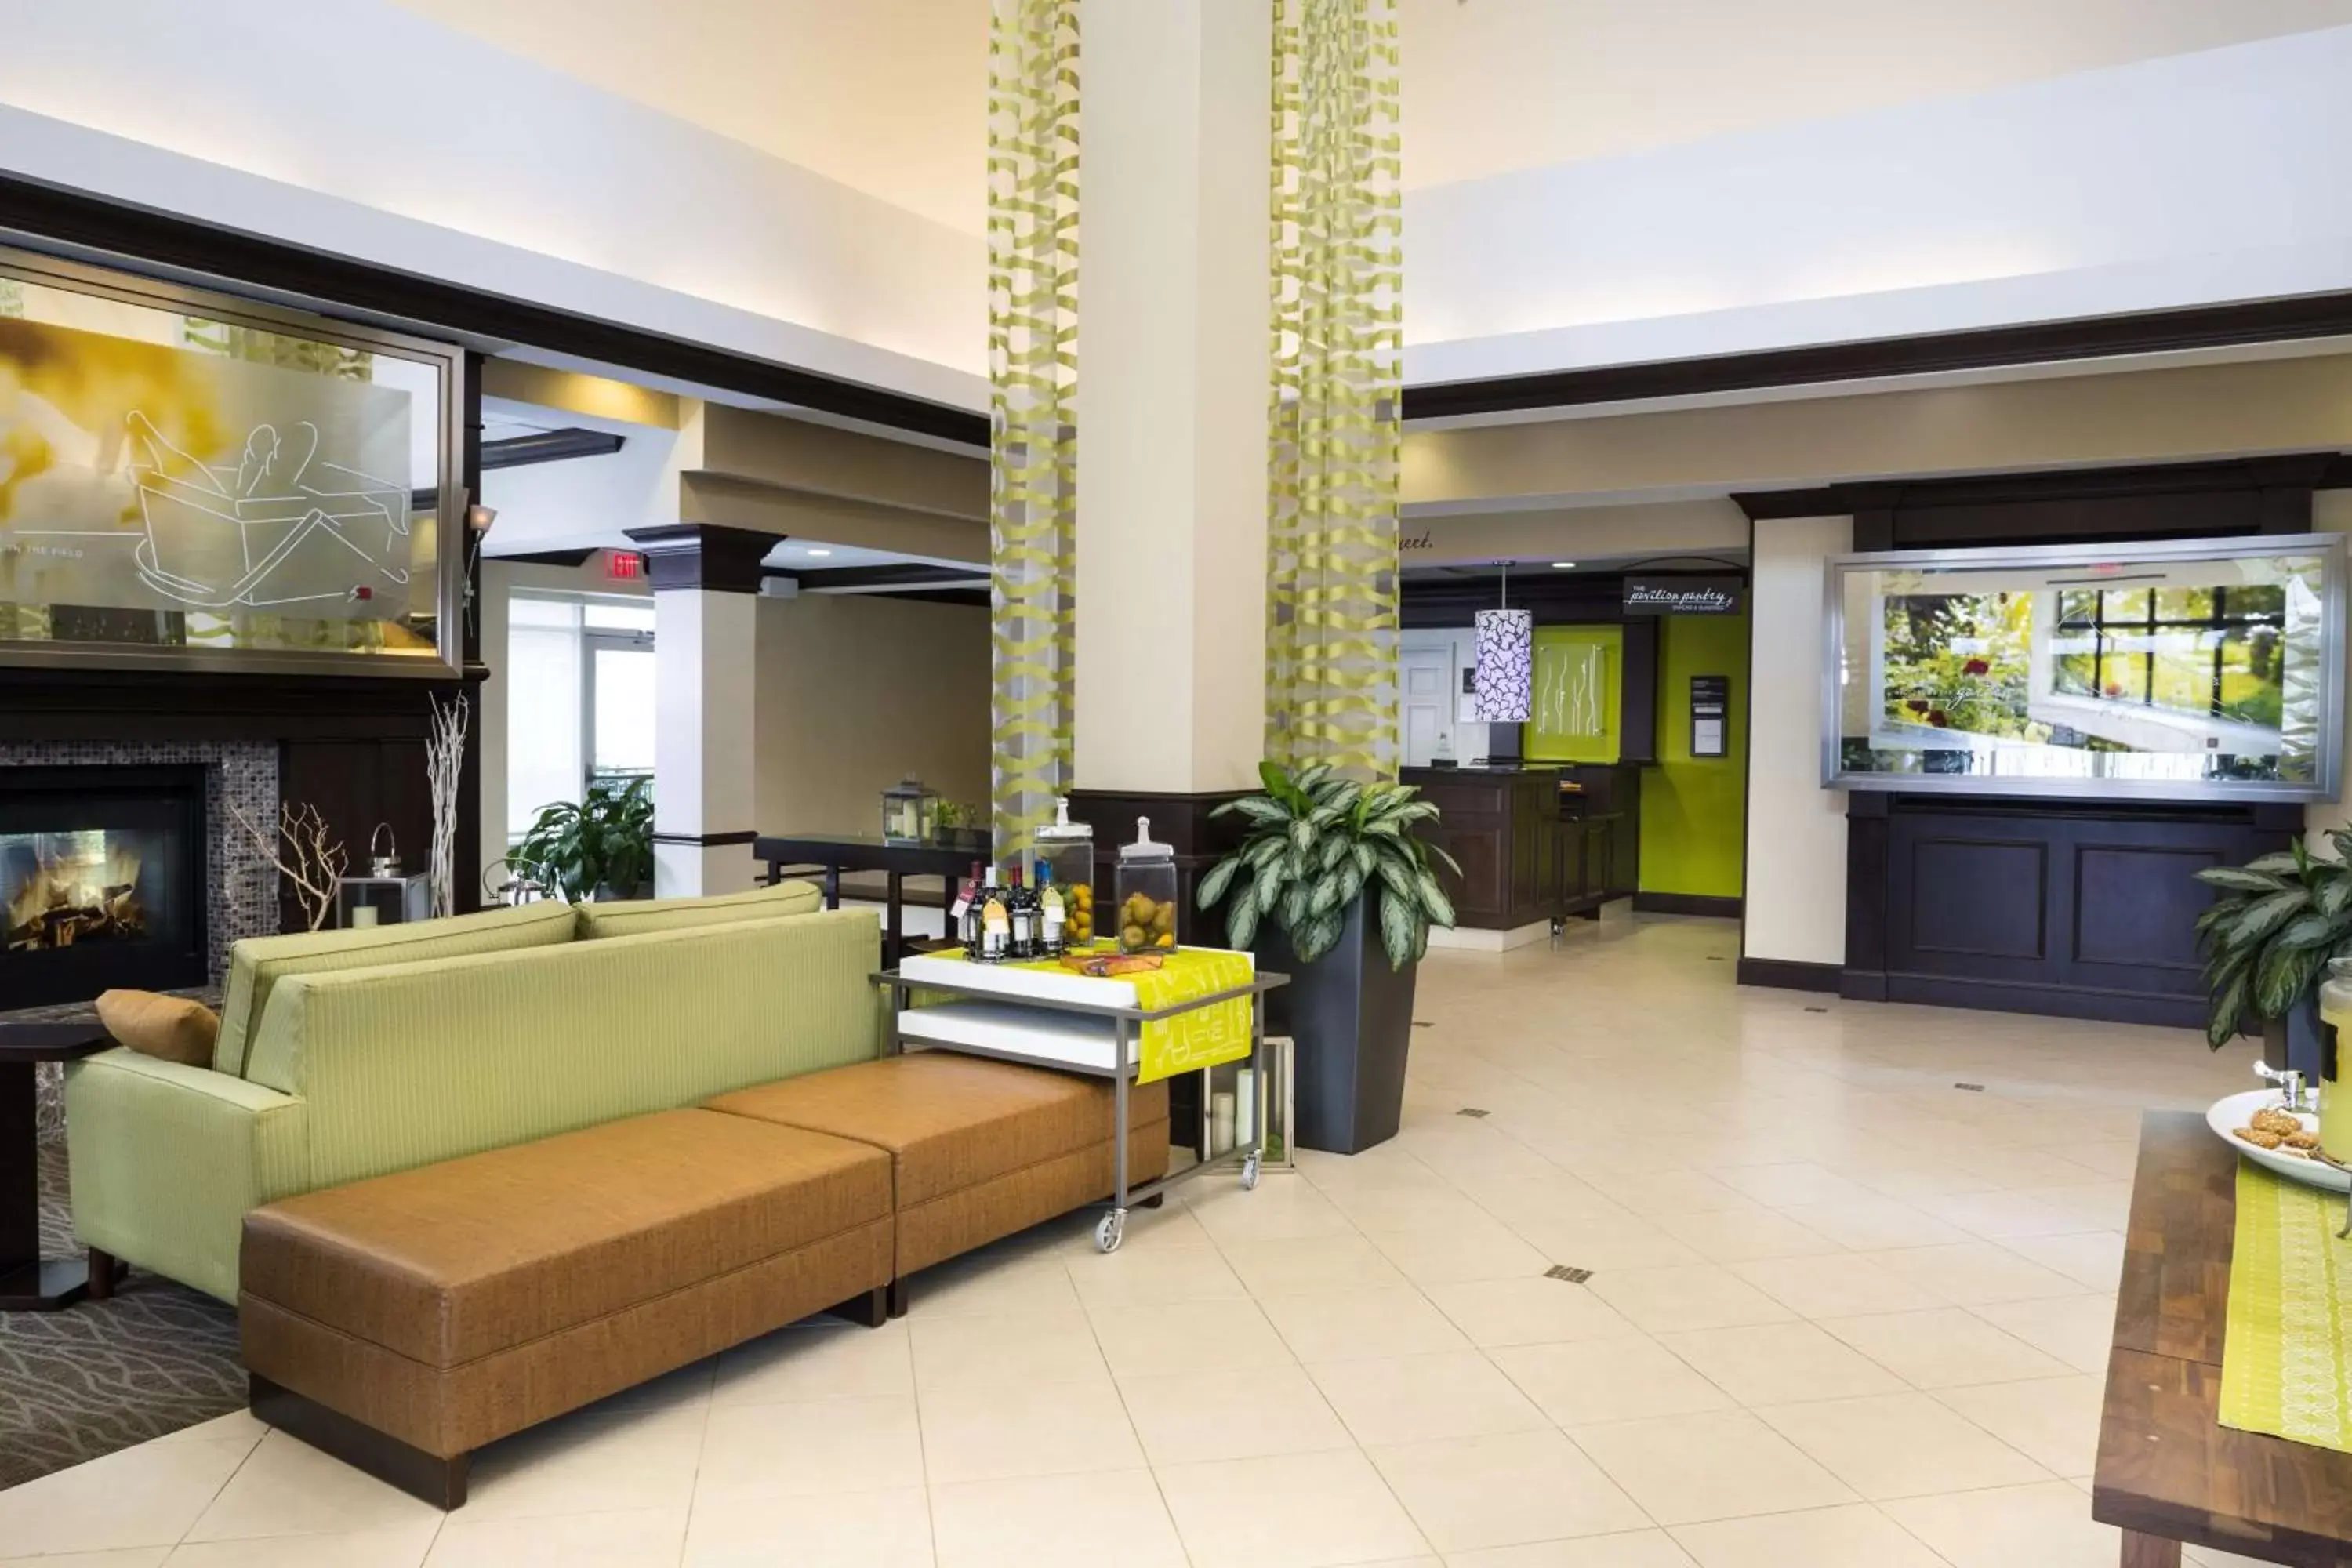 Lobby or reception, Lobby/Reception in Hilton Garden Inn Hampton Coliseum Central